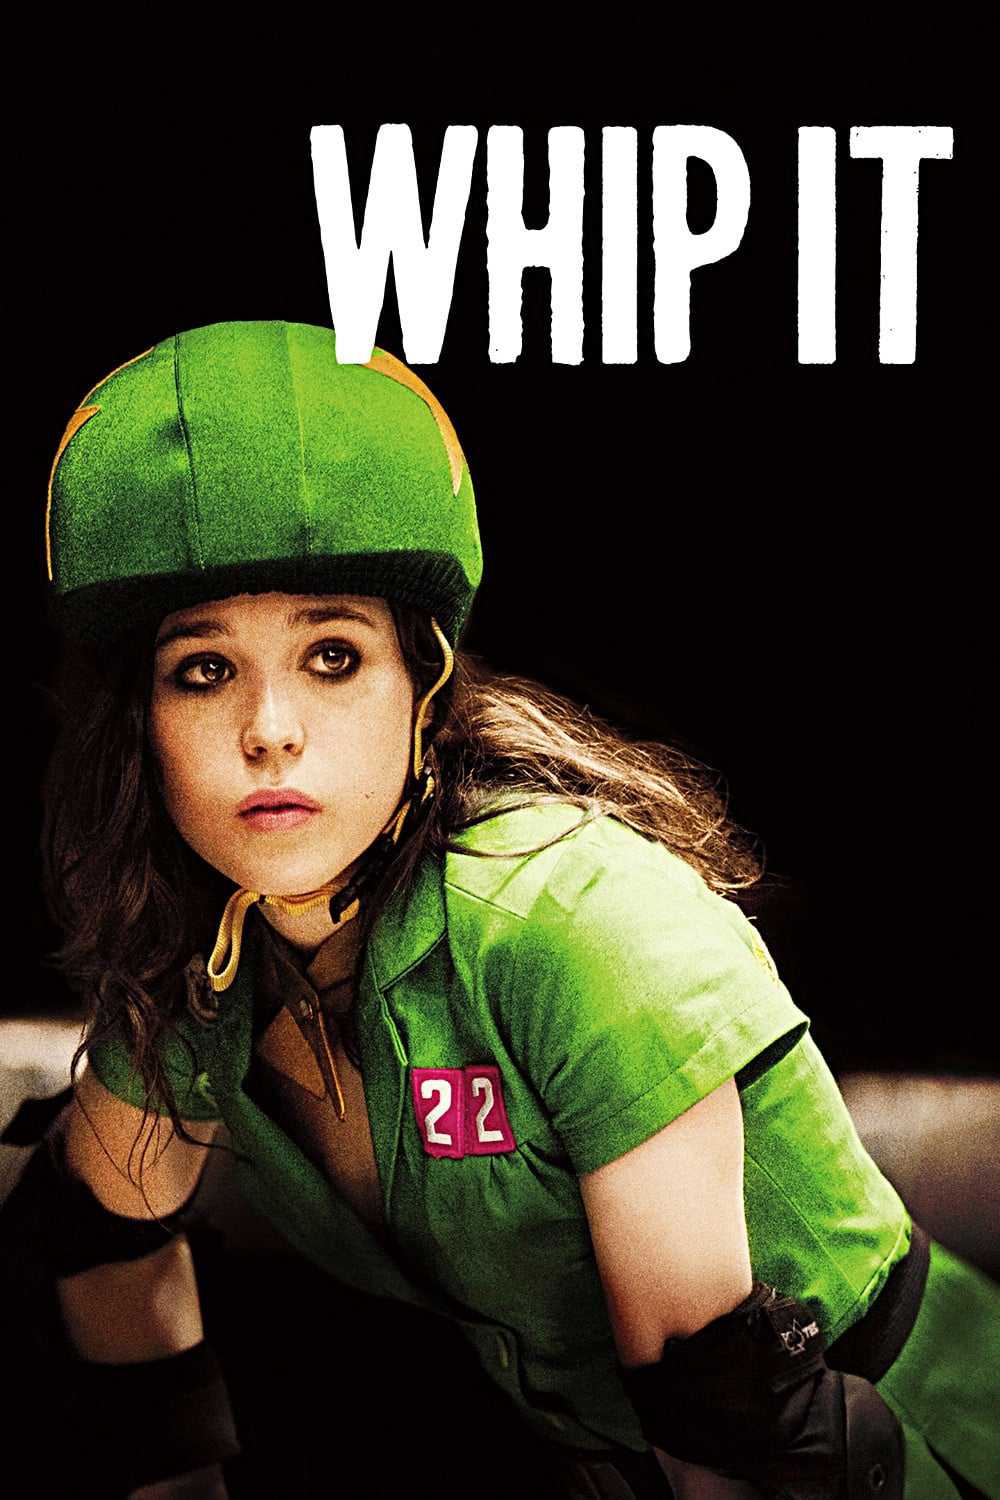 Teen girl nổi loạn - Whip it